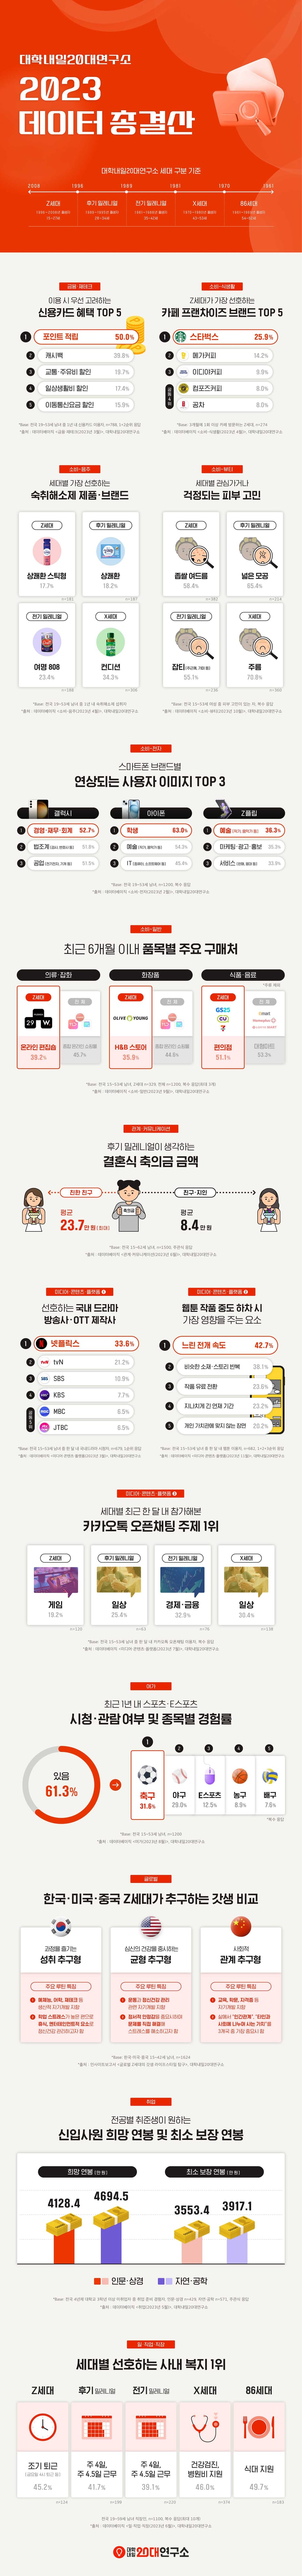 Infographie du Centre de recherche sur les jeunes de 20 ans de Daehaknaeil